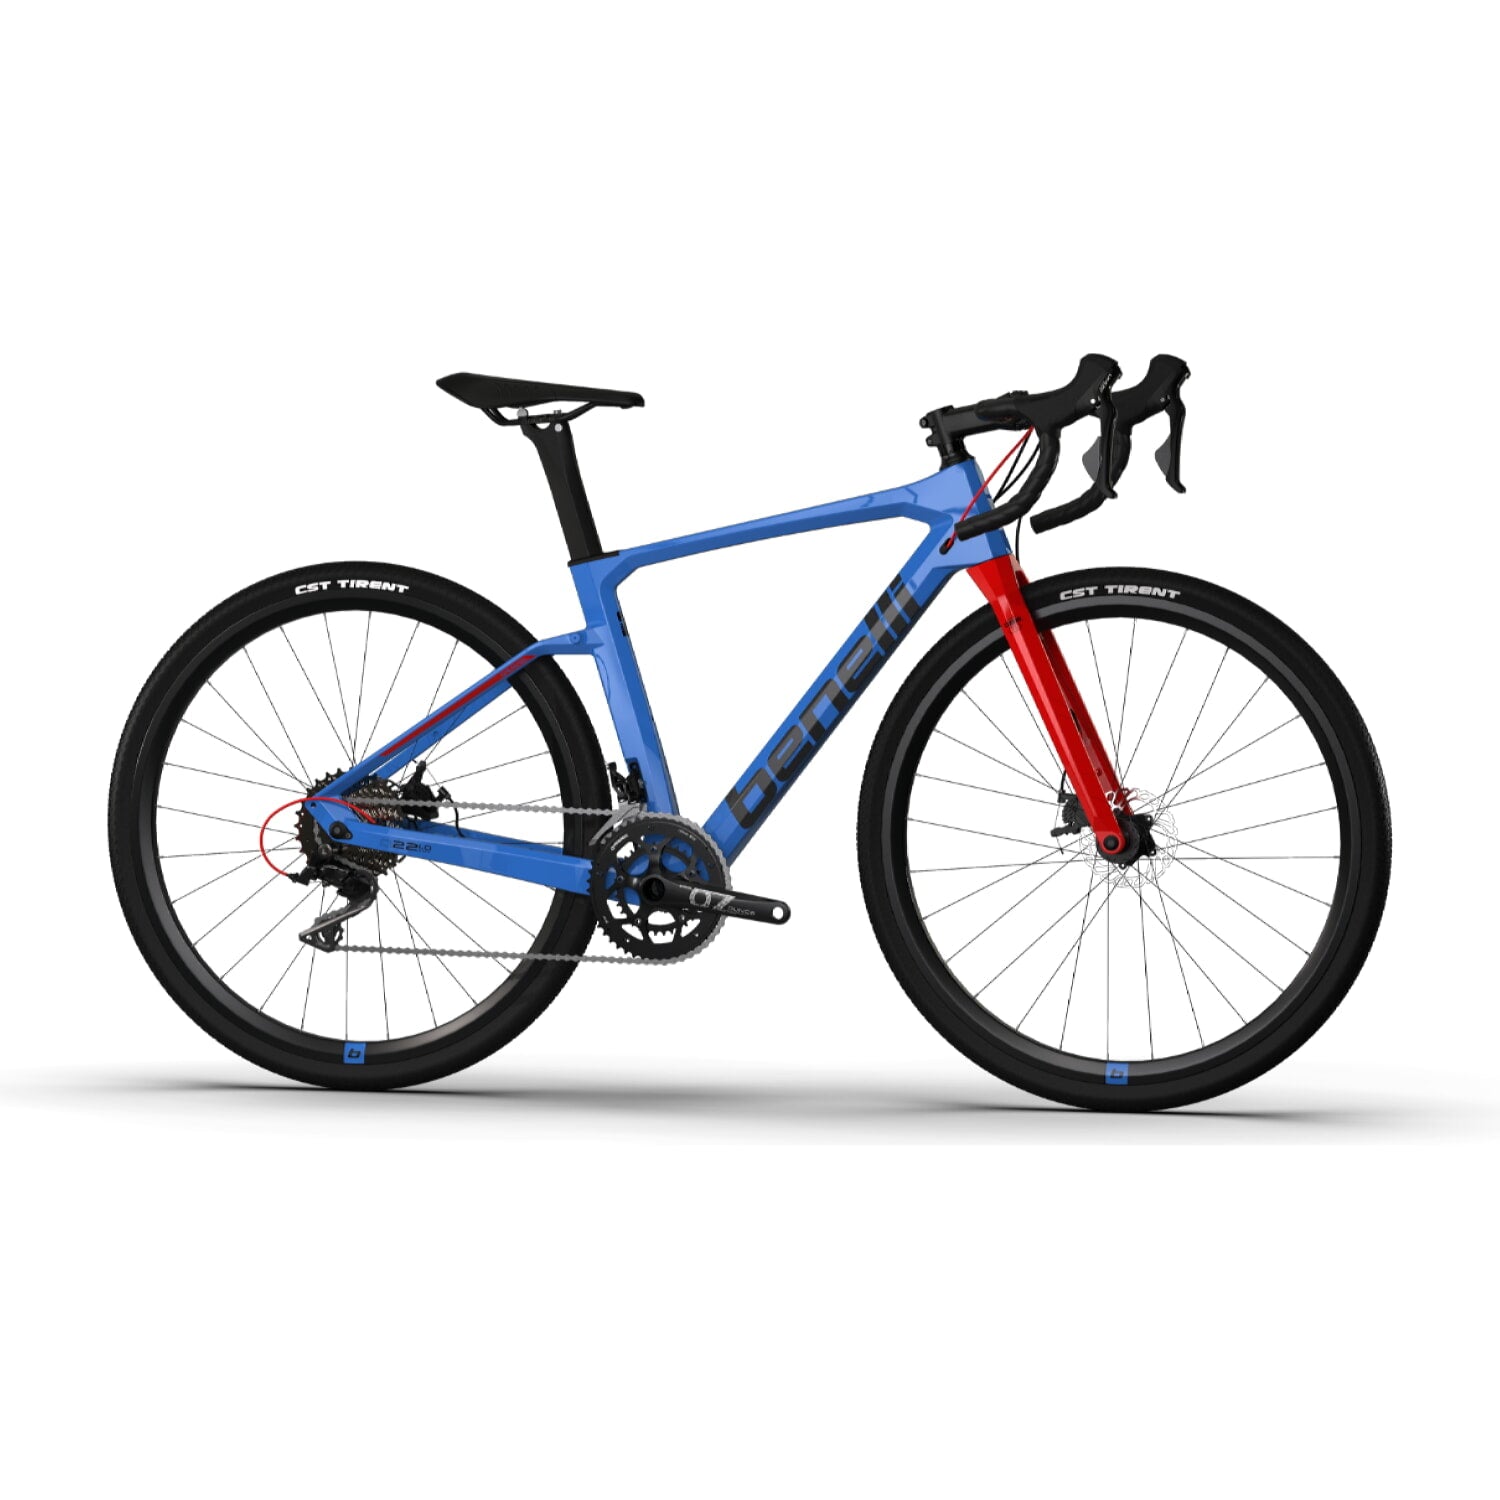 Bicicleta Gravel Benelli Carb. (G22 1.0 Adv Carb) Color Azul/Negro Talla L